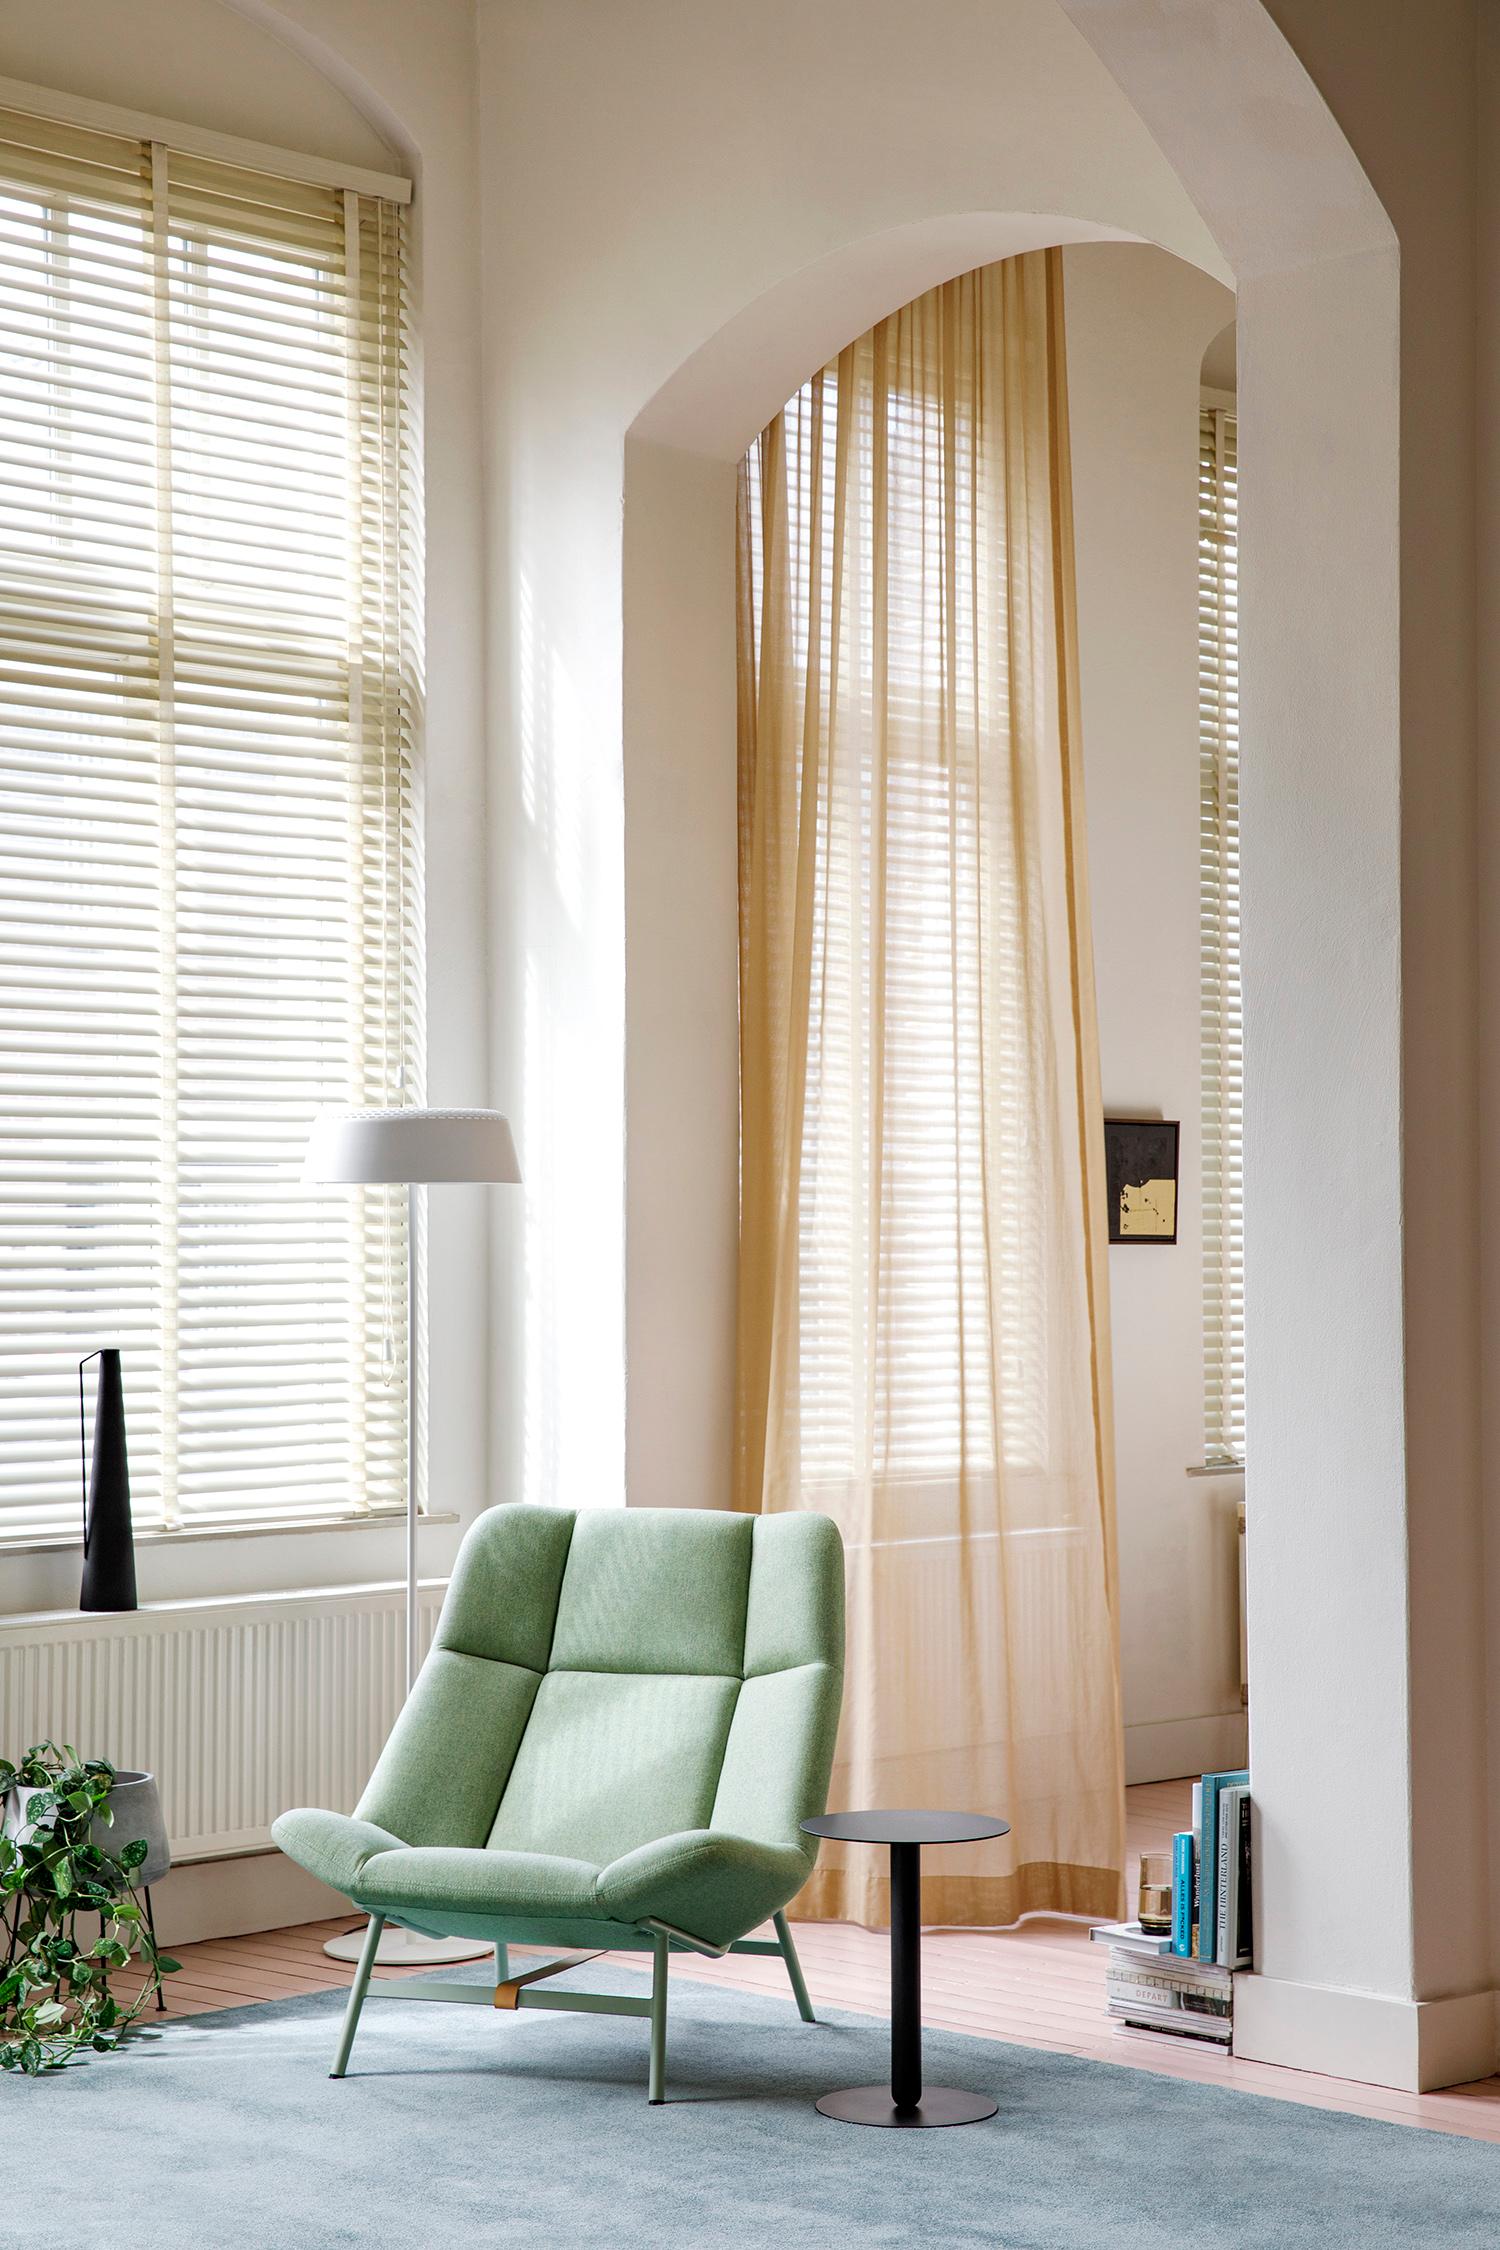 Soft Facet ist ein komfortabler, einladender Loungesessel mit einem ausgeprägten Detailreichtum. Seine offene, einladende Form fühlt sich an wie die weiche Umarmung einer geometrisch gestickten Decke, die dazu einlädt, sich zurückzulehnen, zu